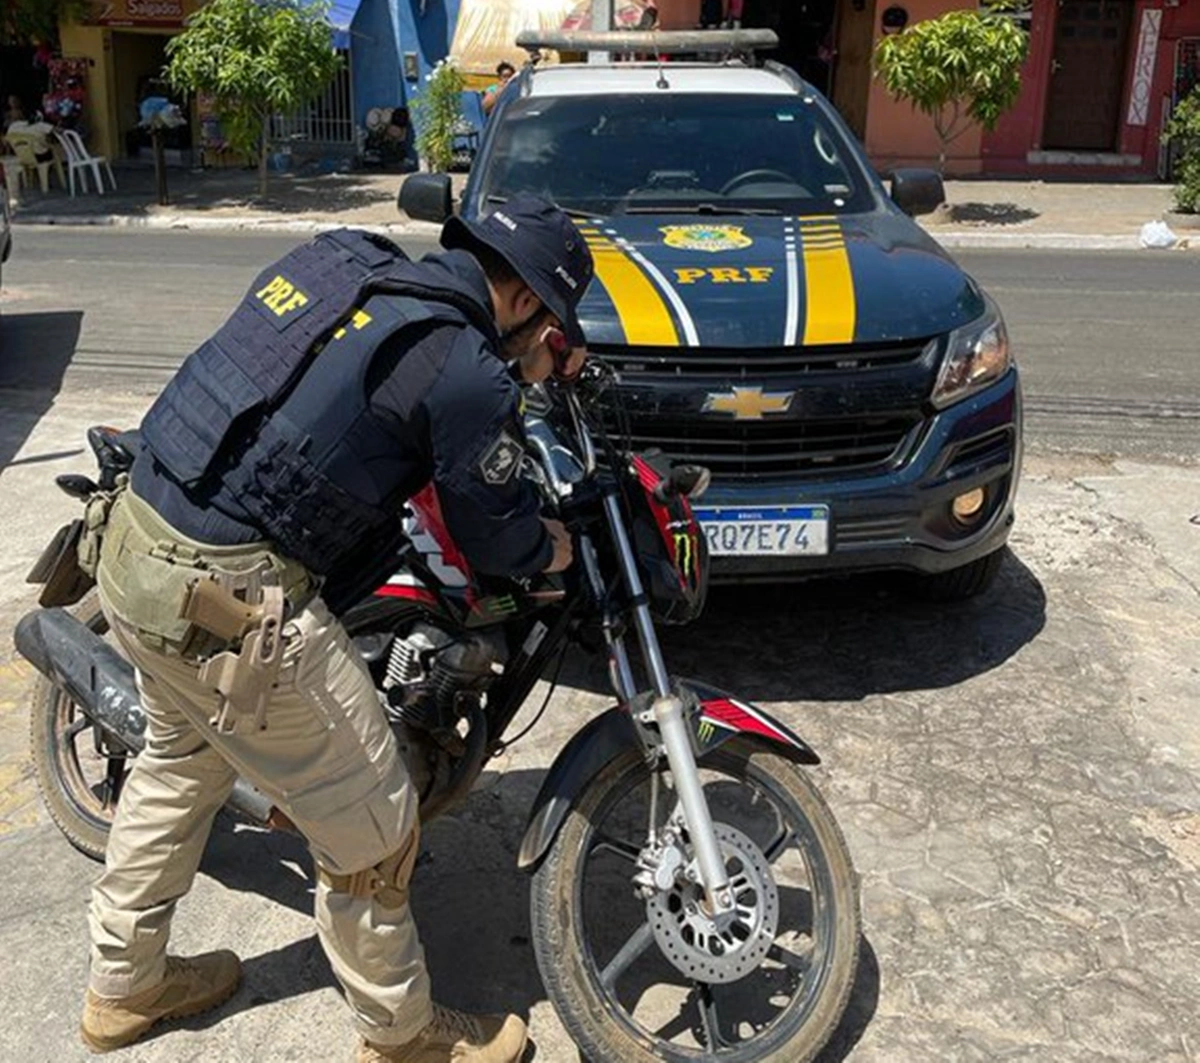 Motocicleta foi apreendida com CRLV falso